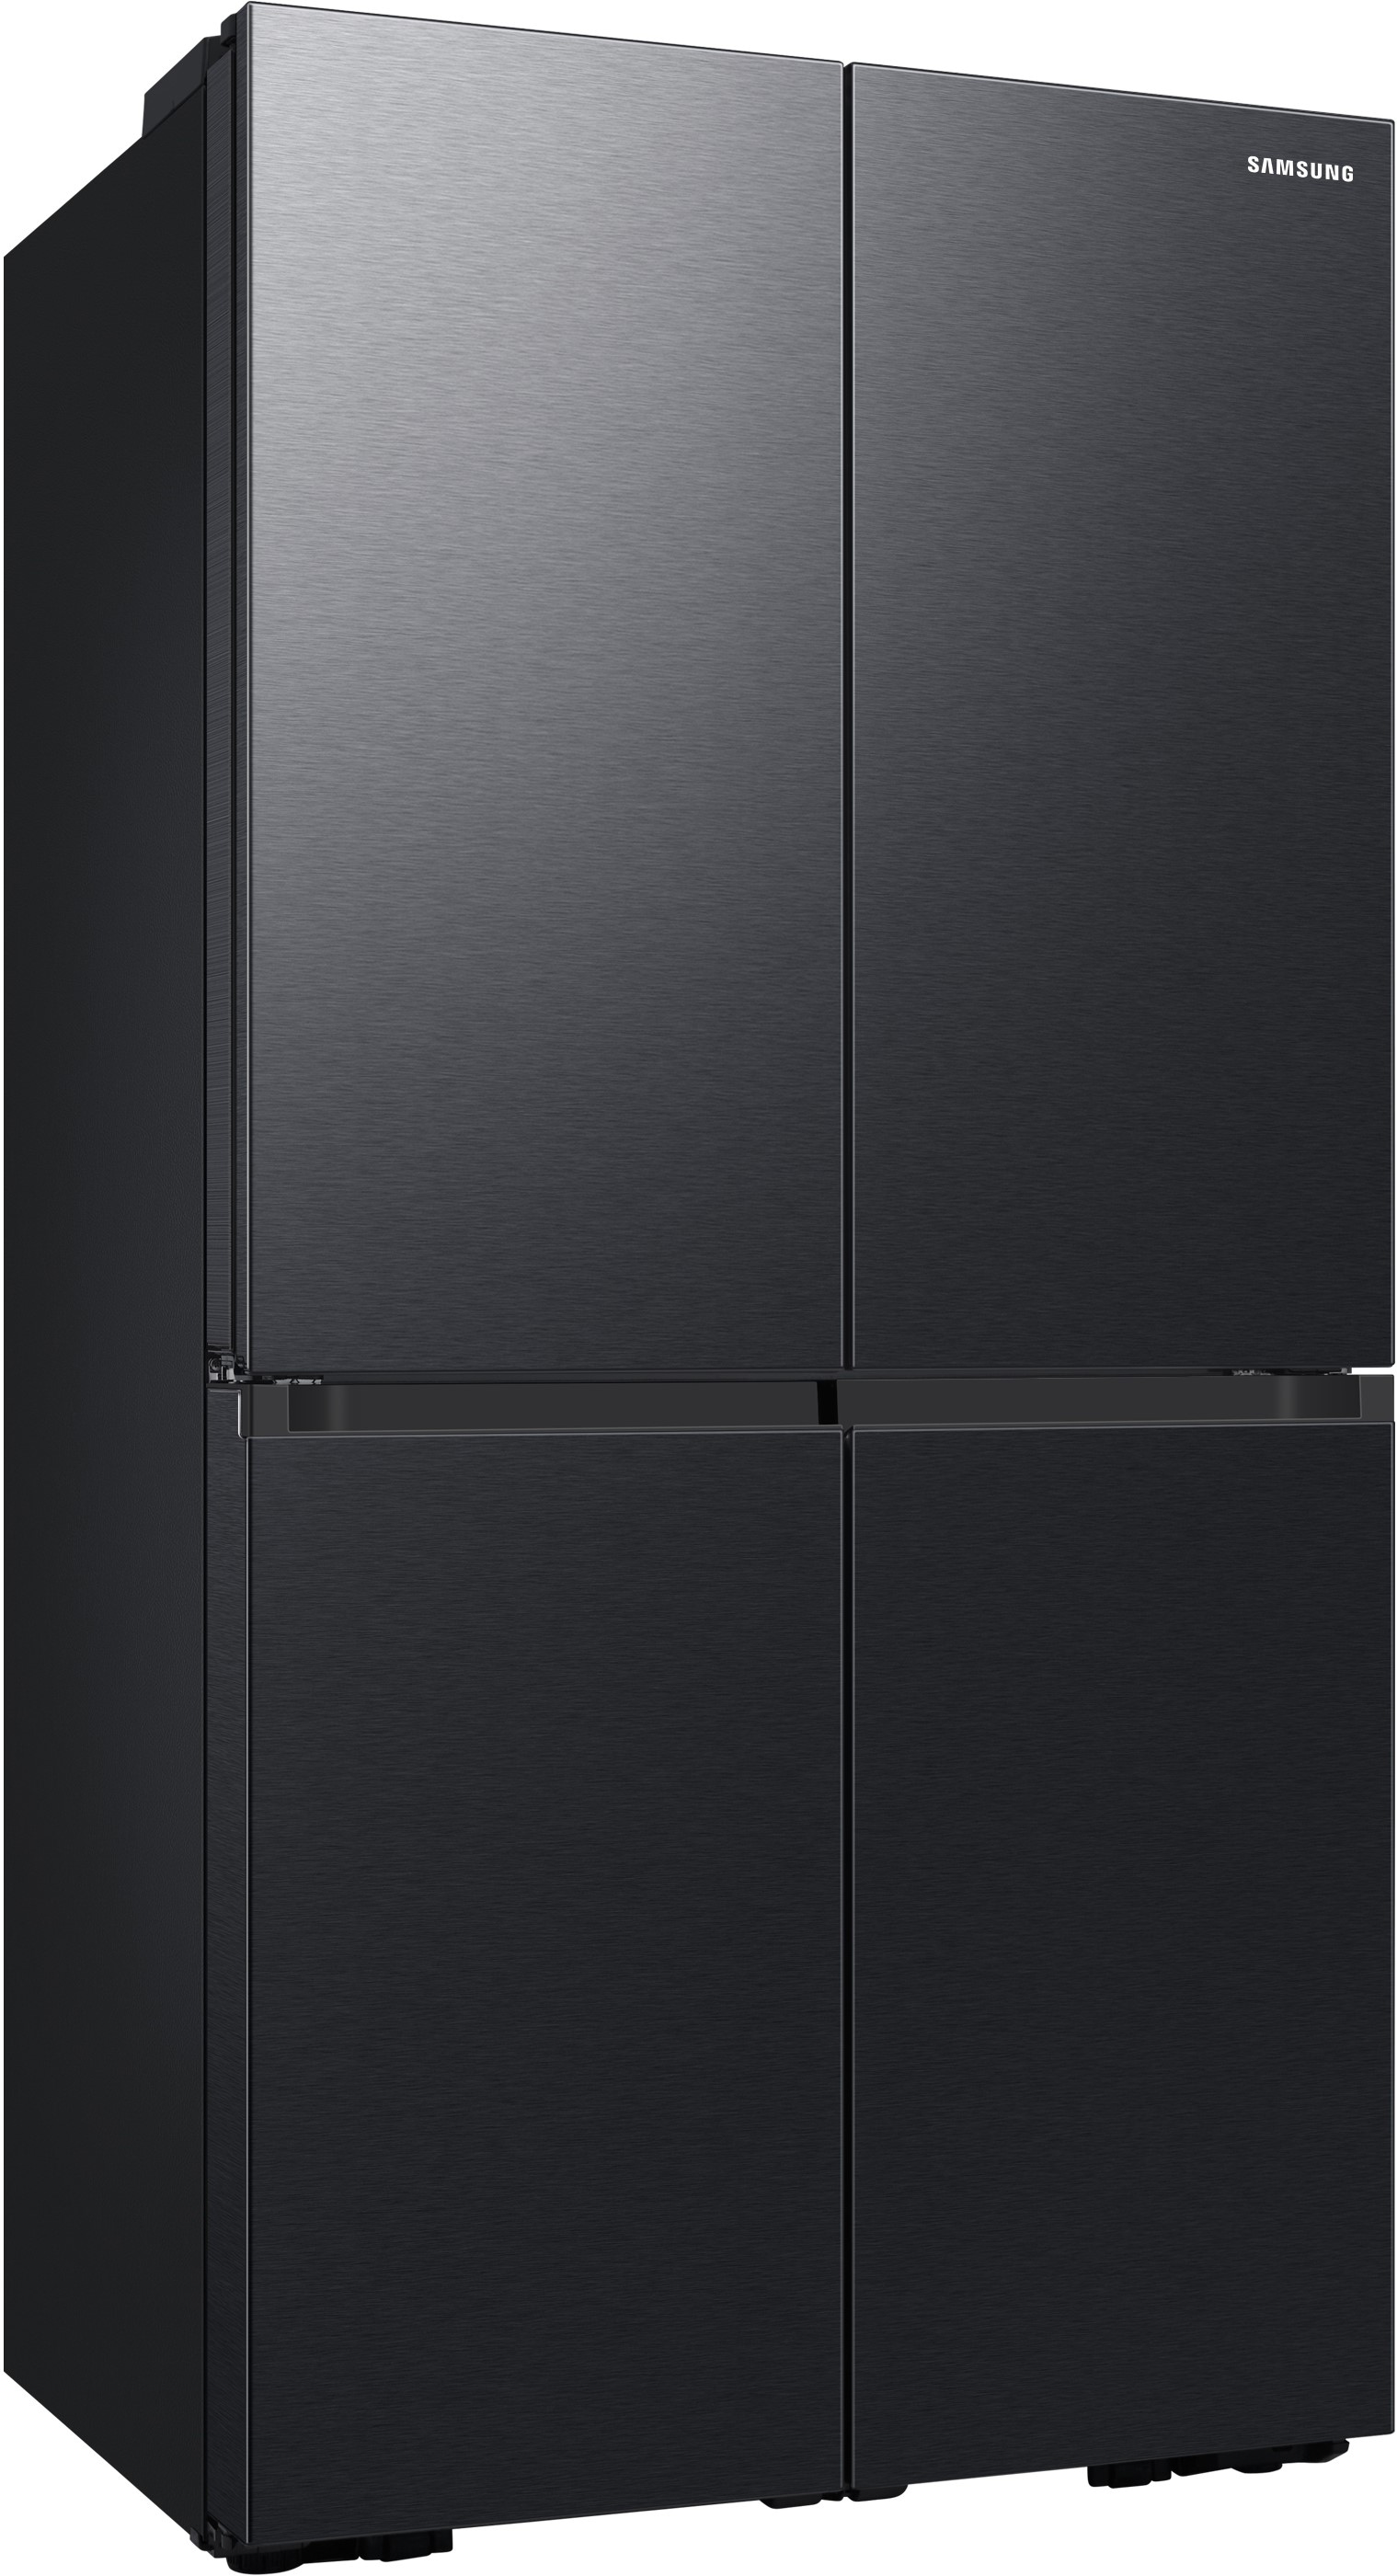 Samsung French Door »RF65DG960EB1EF«, RF65DG960EB1EF, 183 cm hoch, 91,2 cm breit